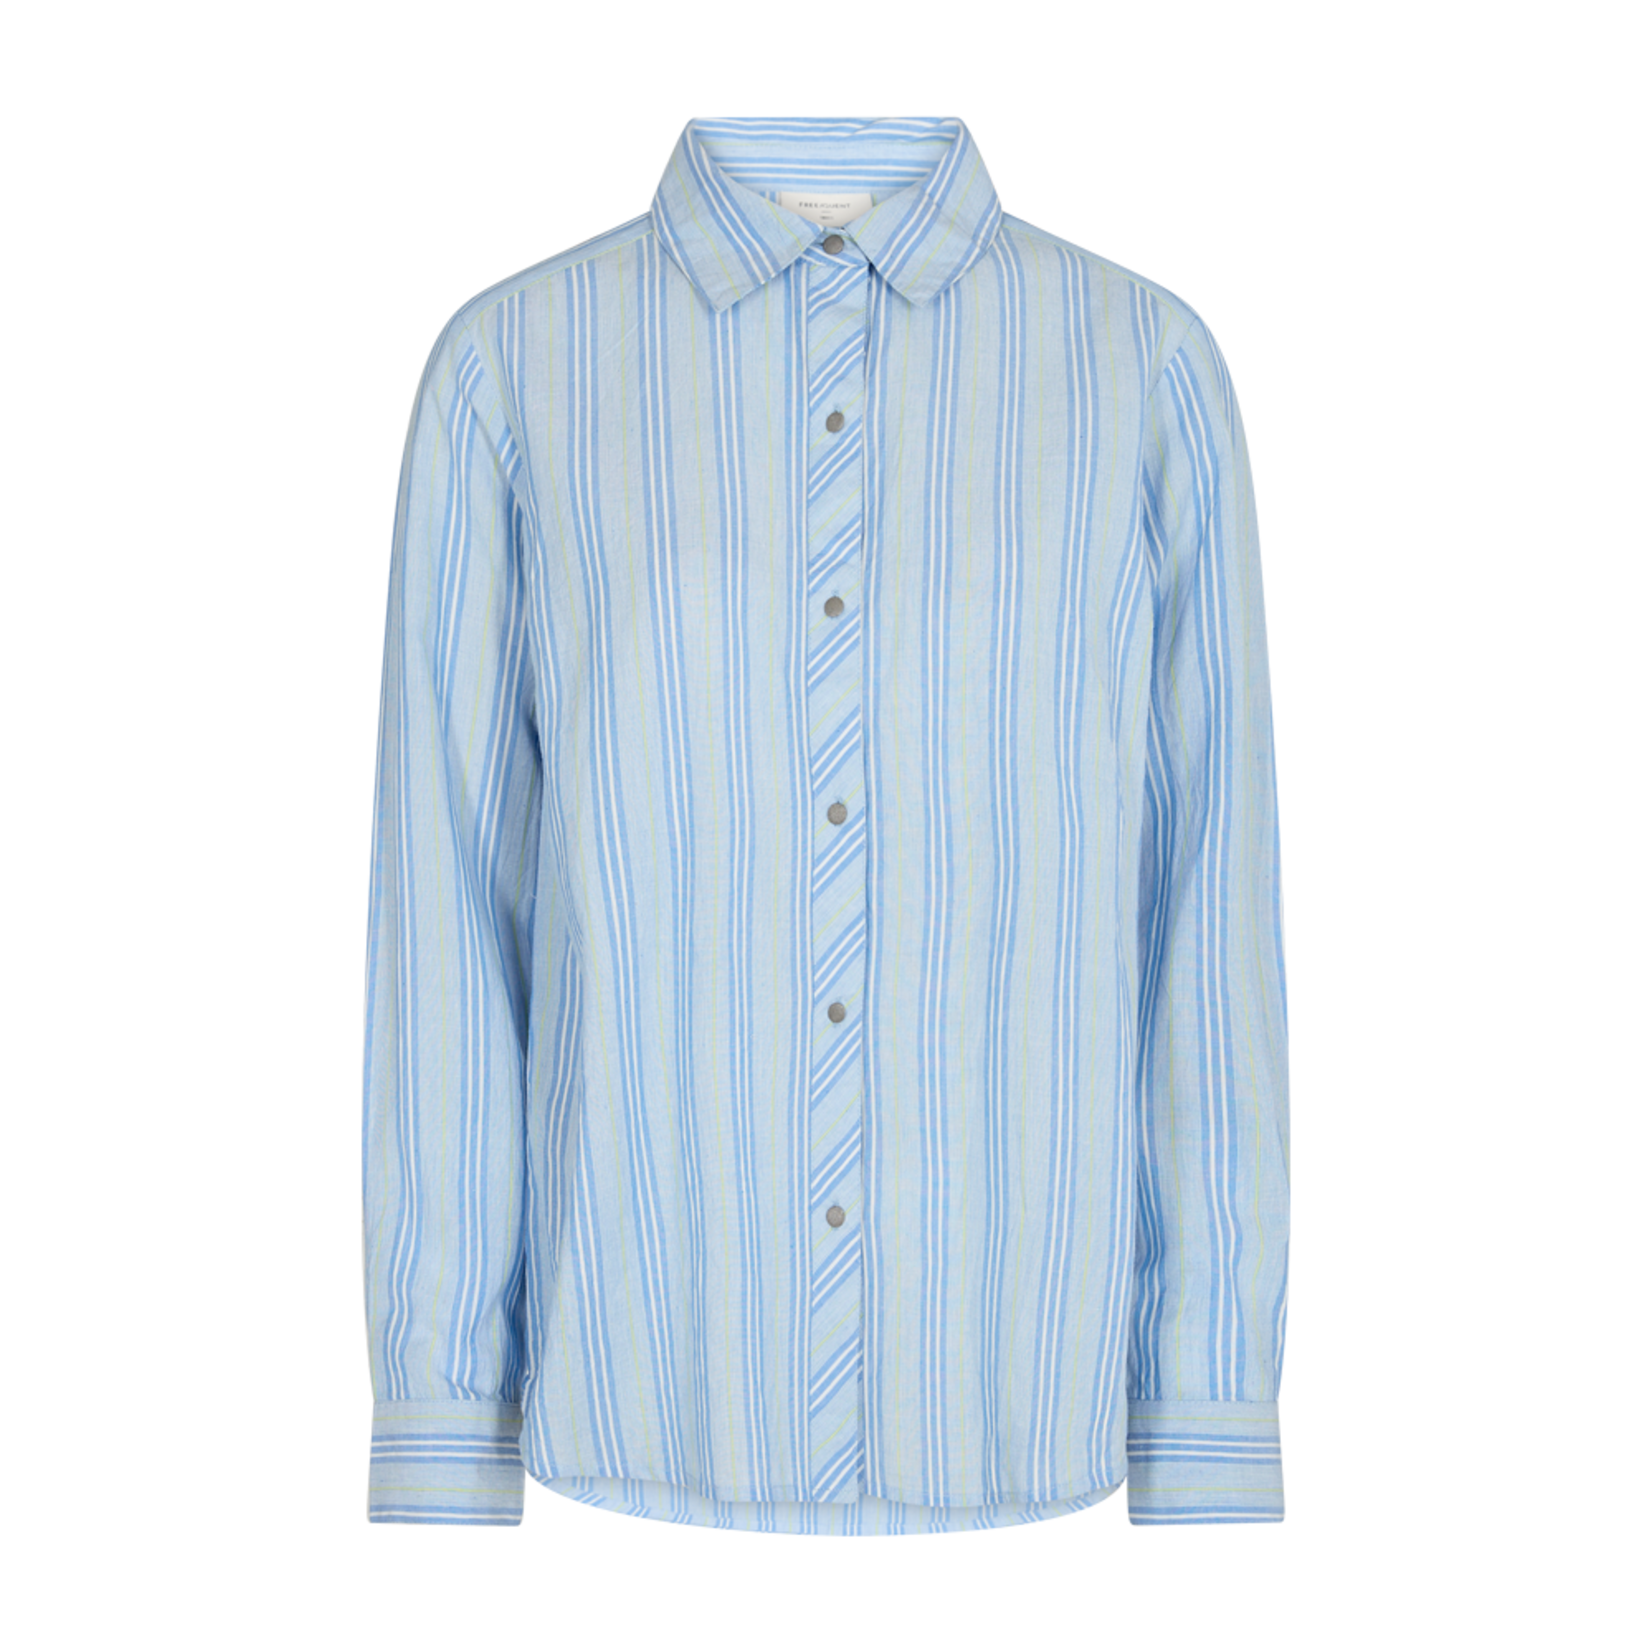 Free/quent Holan: Een pracht van een hemd, lange mouwen, licht blauw en leuke print (strepen)